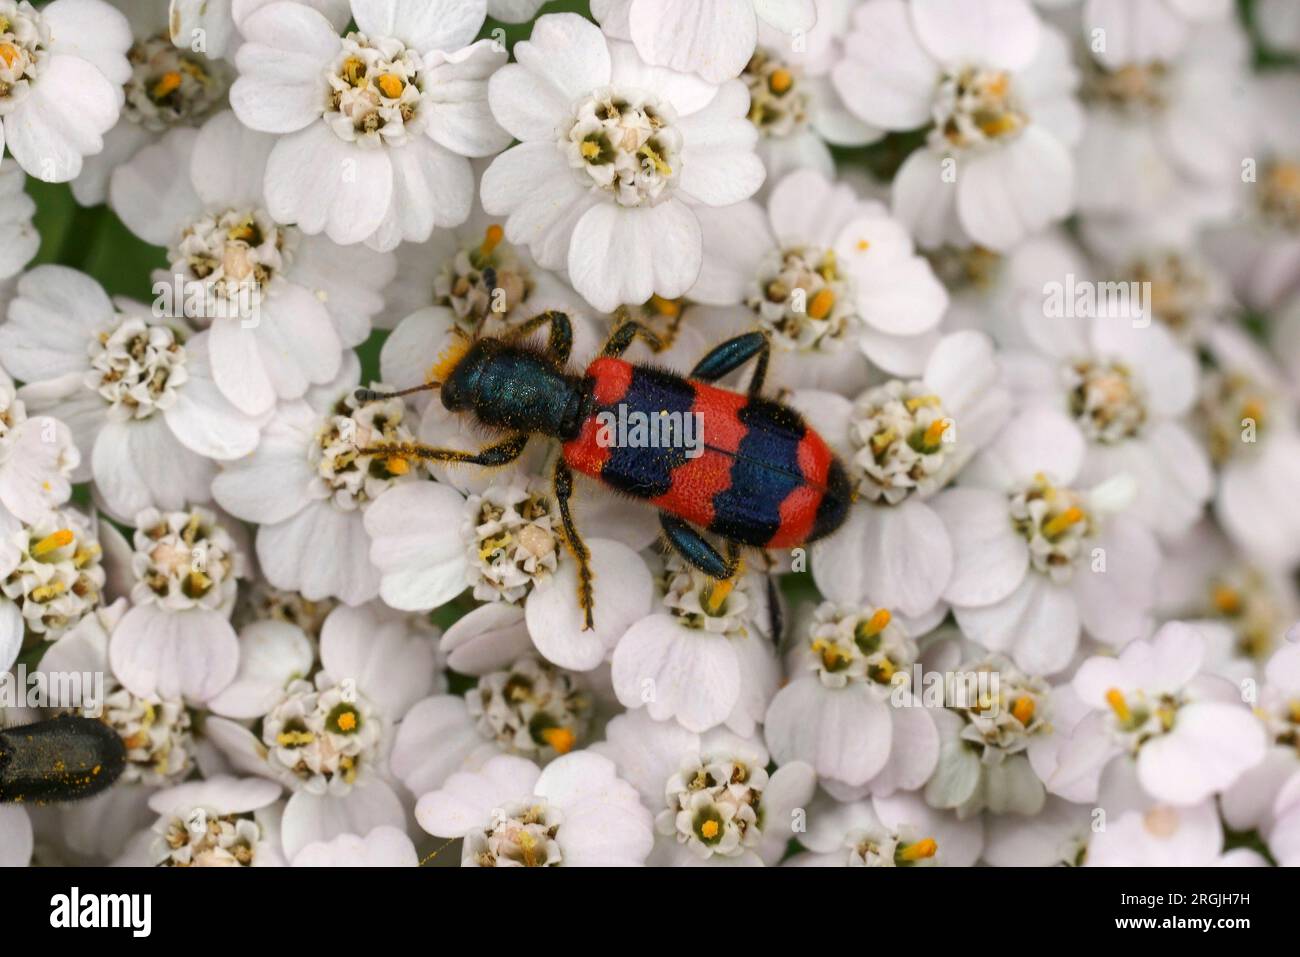 Natürliche Nahaufnahme auf einem rot-schwarz gestreiften Bea-essenden Käfer, Trichodes apiarius, der auf einer weißen Blume mit gemeinem Schafgarn sitzt, Achillea millefolium Stockfoto